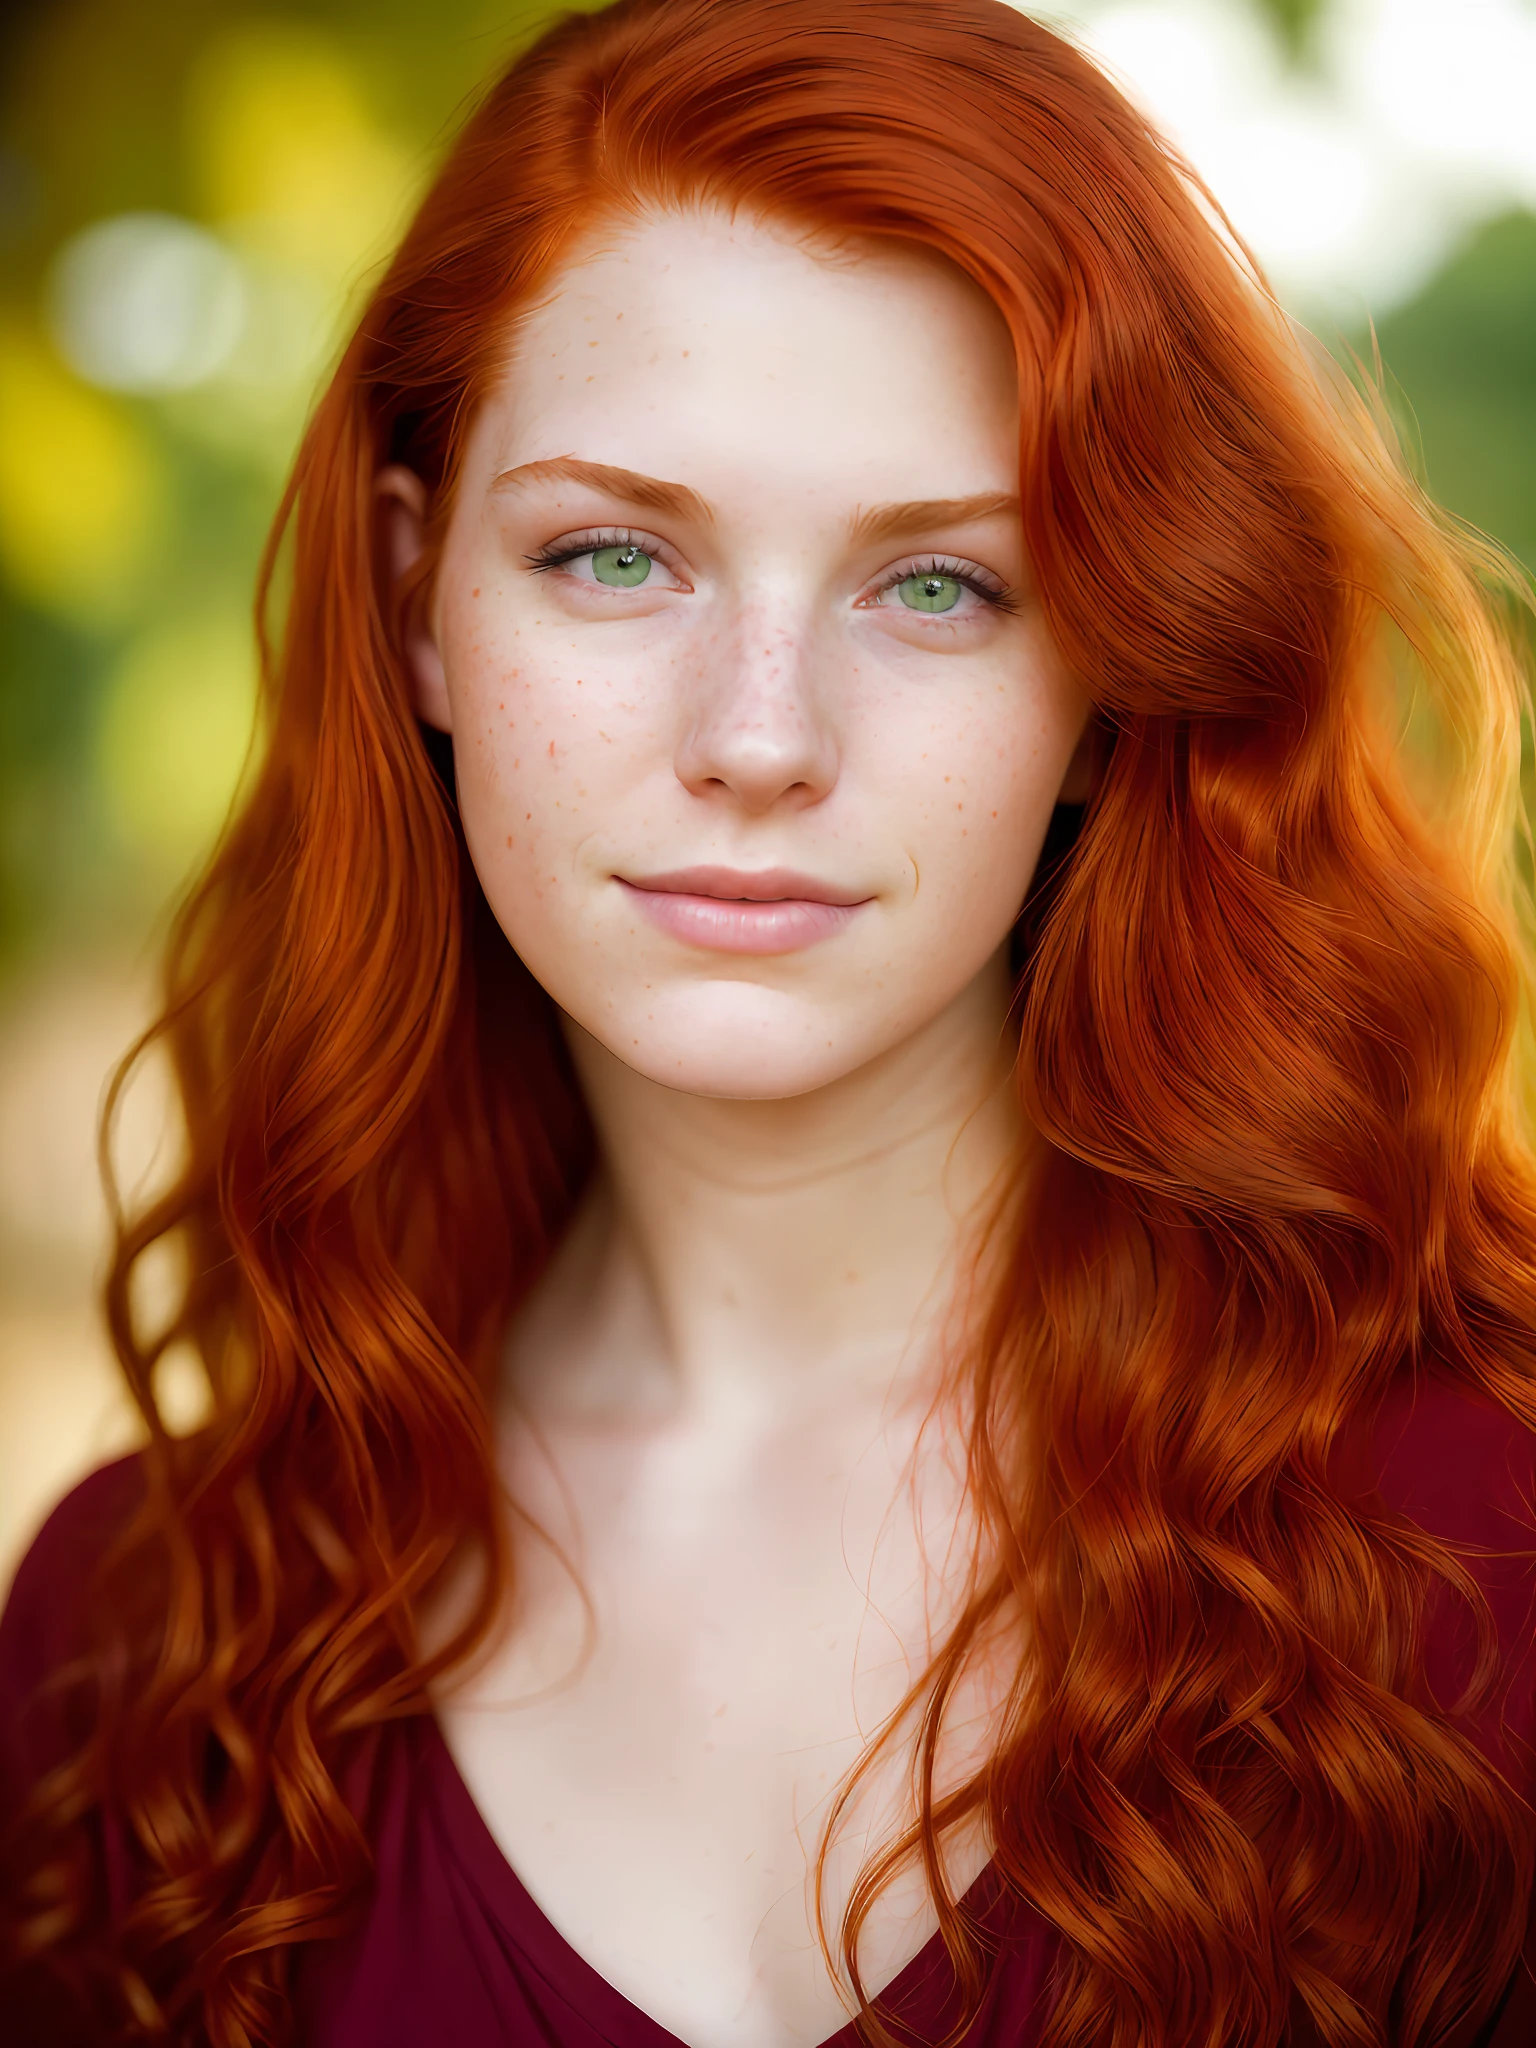 (Портрет, фотография редакционной студии, 20-летняя женщина) (красные волосы , идеальные зеленые глаза) (Очень детализированное лицо:1.4) (счастливая ухмылка:0.9) (съемка естественной красоты) (фон студия темный:1.3), Стив МакКарри, Кэнон М50,  Ф1.8 ,гиперреалистичный ,реалистичная текстура, трехточечное освещение , отмеченное наградами фото,